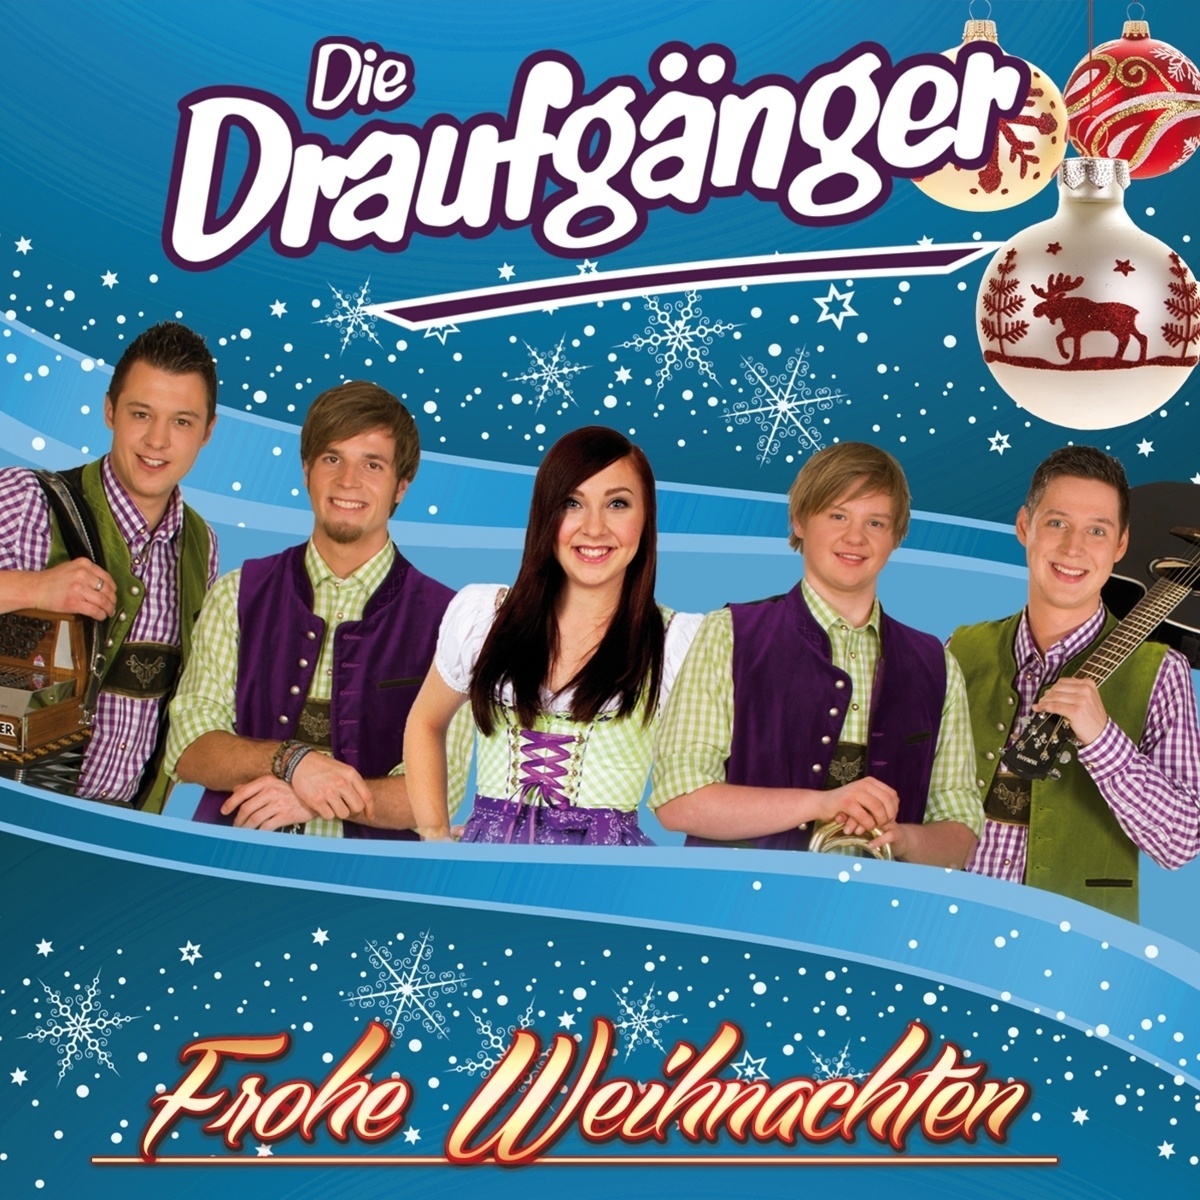 Die Draufgänger - Frohe Weihnachten - Sterne der Weihnacht CD - Die Draufgänger. (CD)